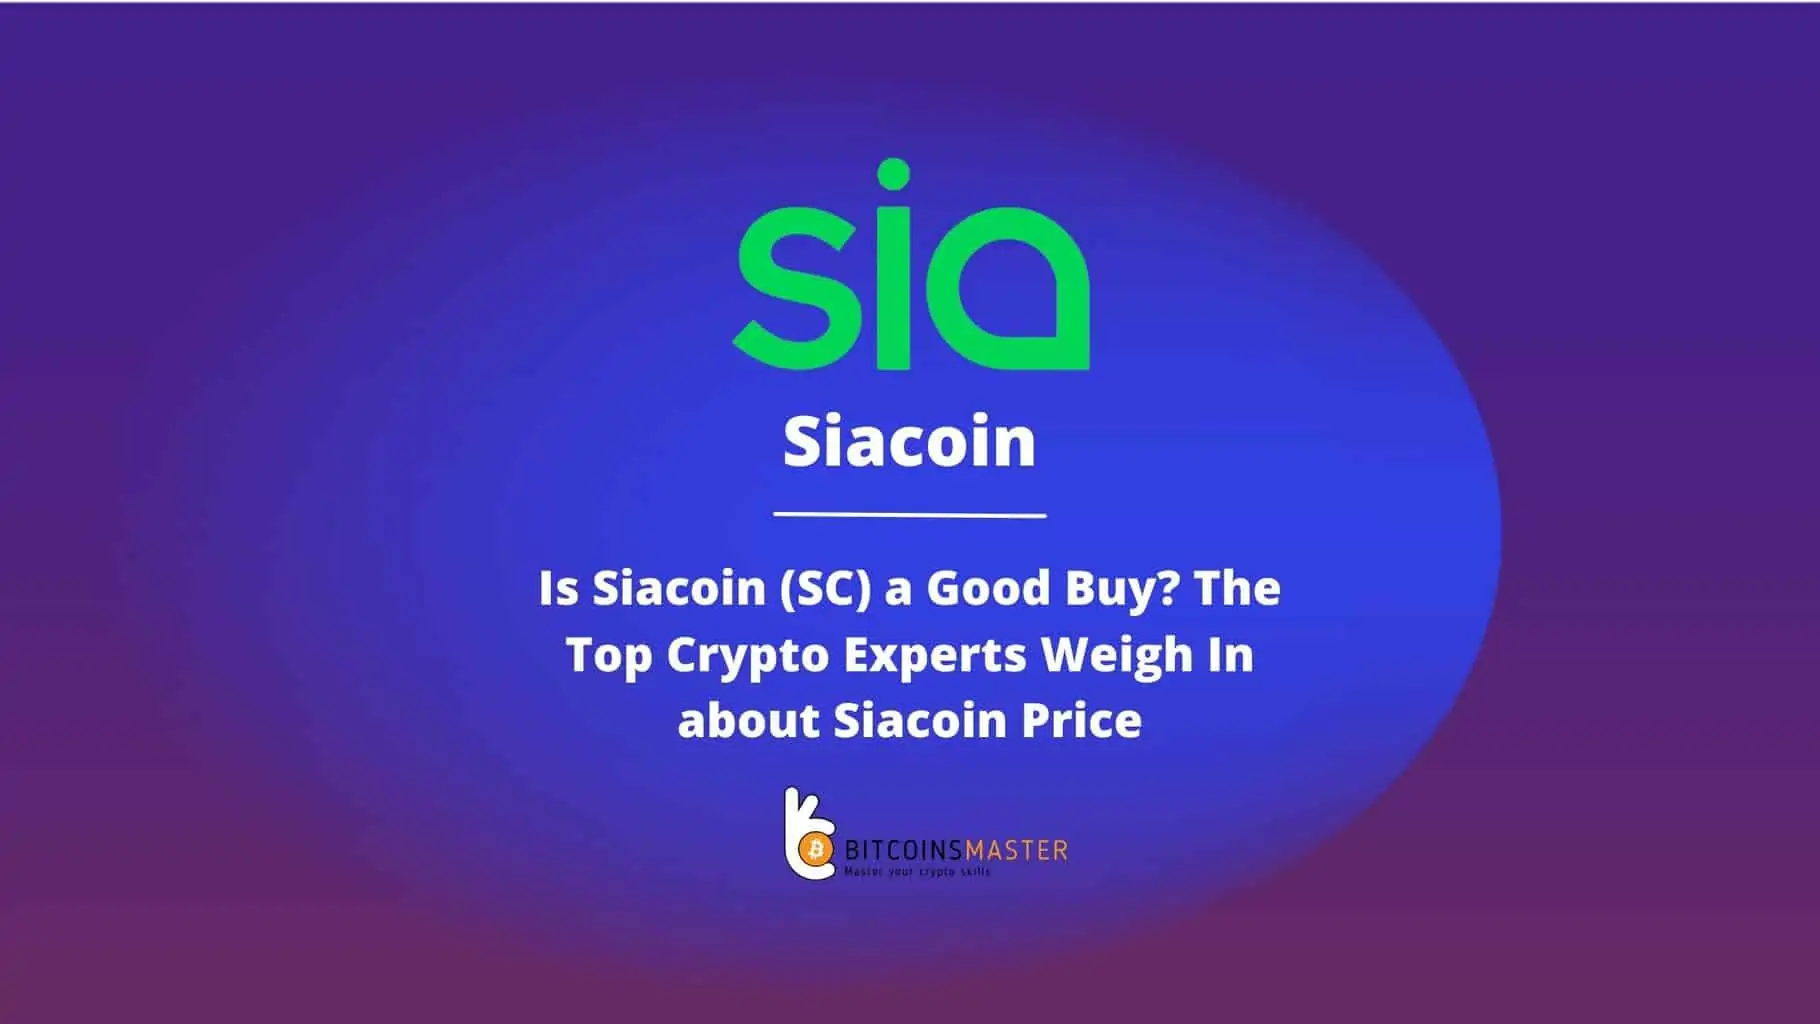 ¿Es Siacoin (Sc) una buena compra? Los mejores expertos en criptografía opinan sobre el precio de Siacoin